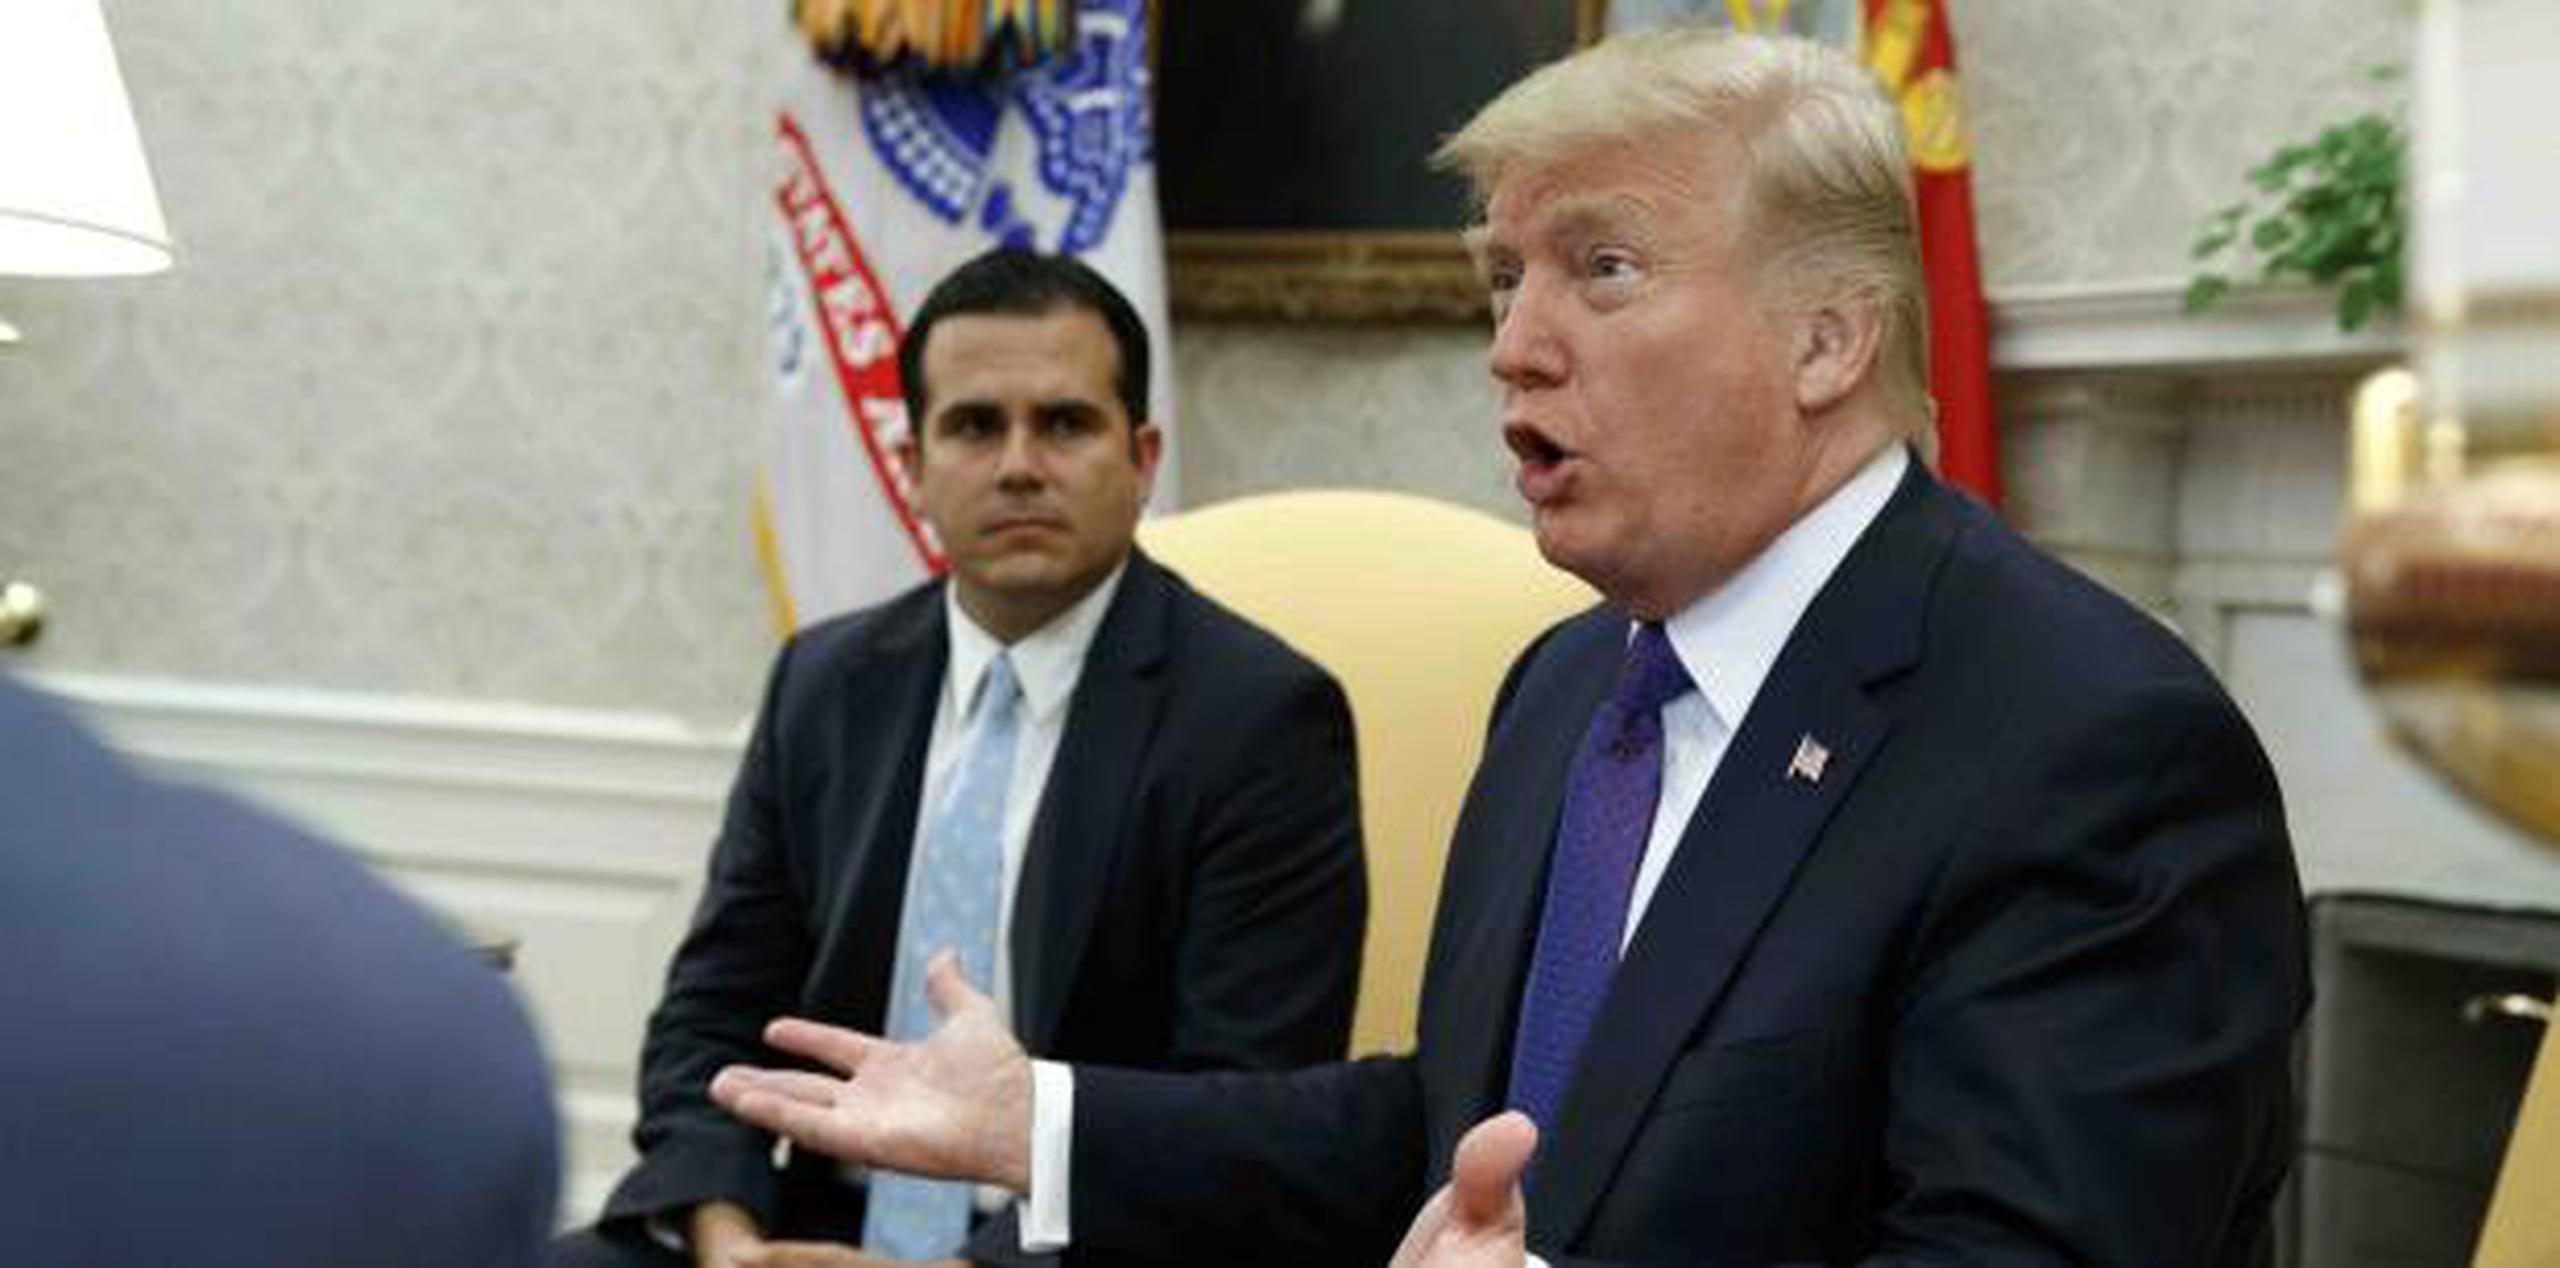 El gobernador Ricardo Rosselló durante una reunión que sostuvo con el presidente Donald Trump en la Casa Blanca. (Archivo / AP)